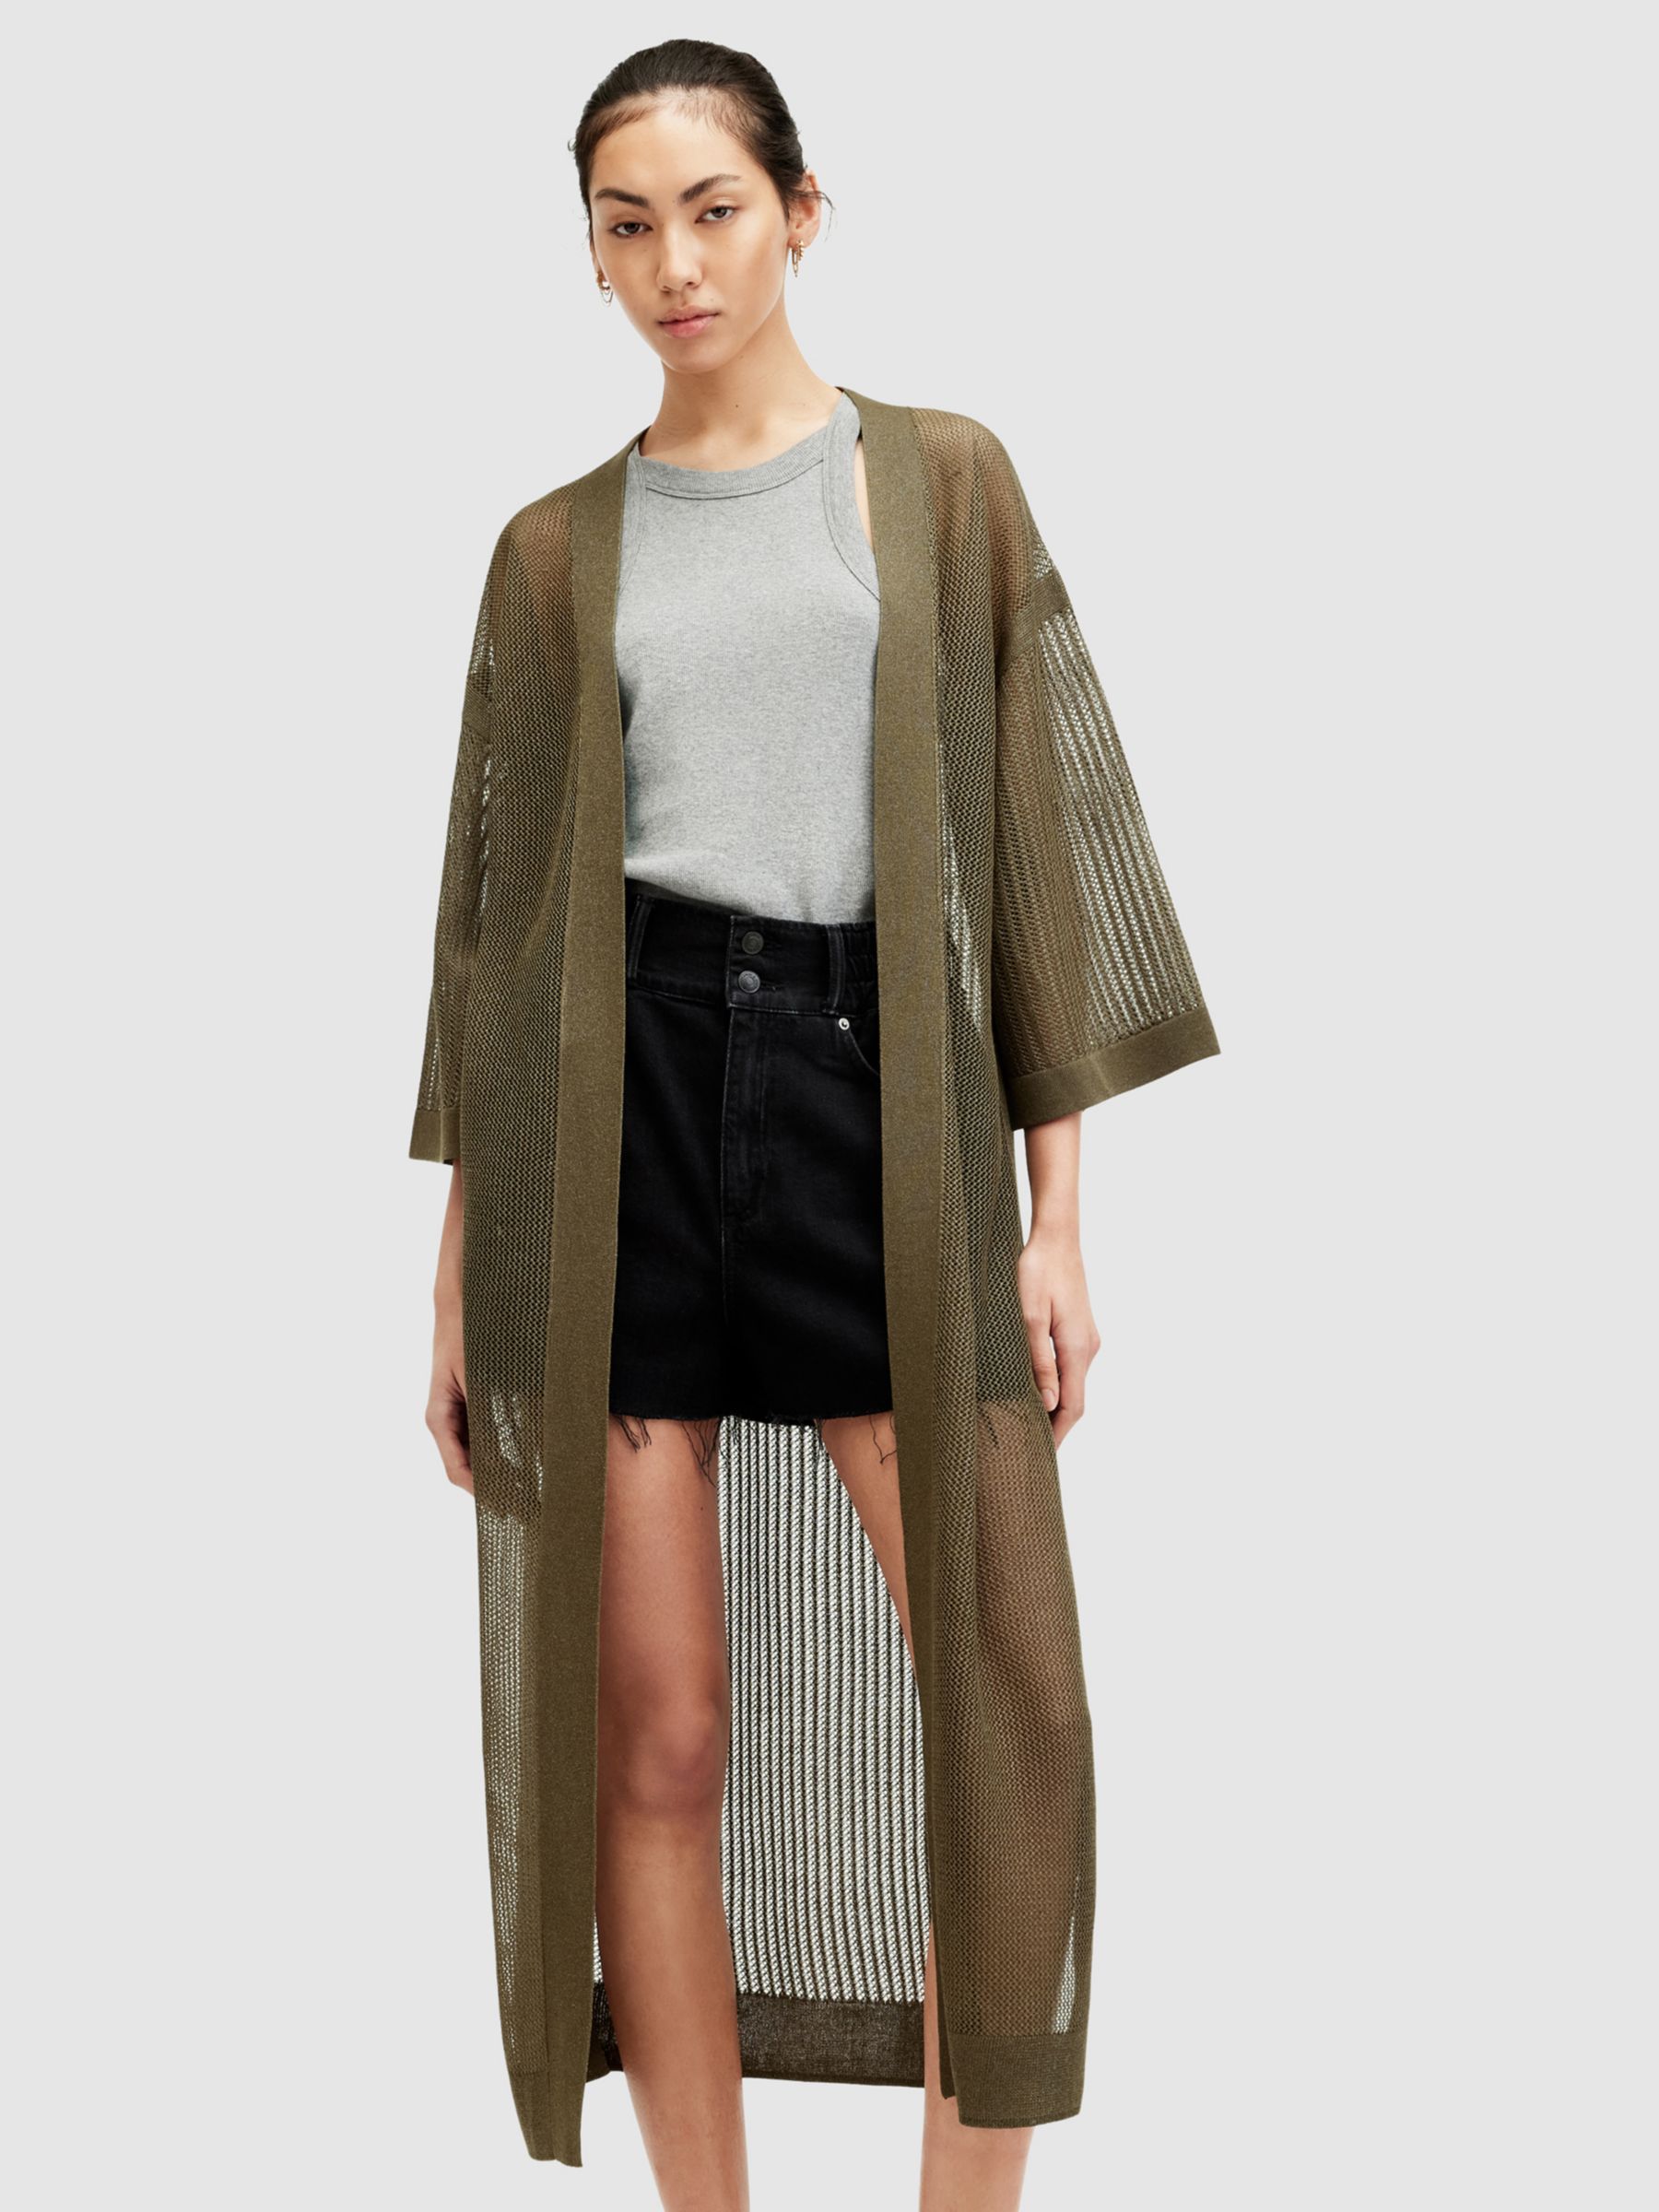 AllSaints Misha Knit Kimono, Khaki Green, L